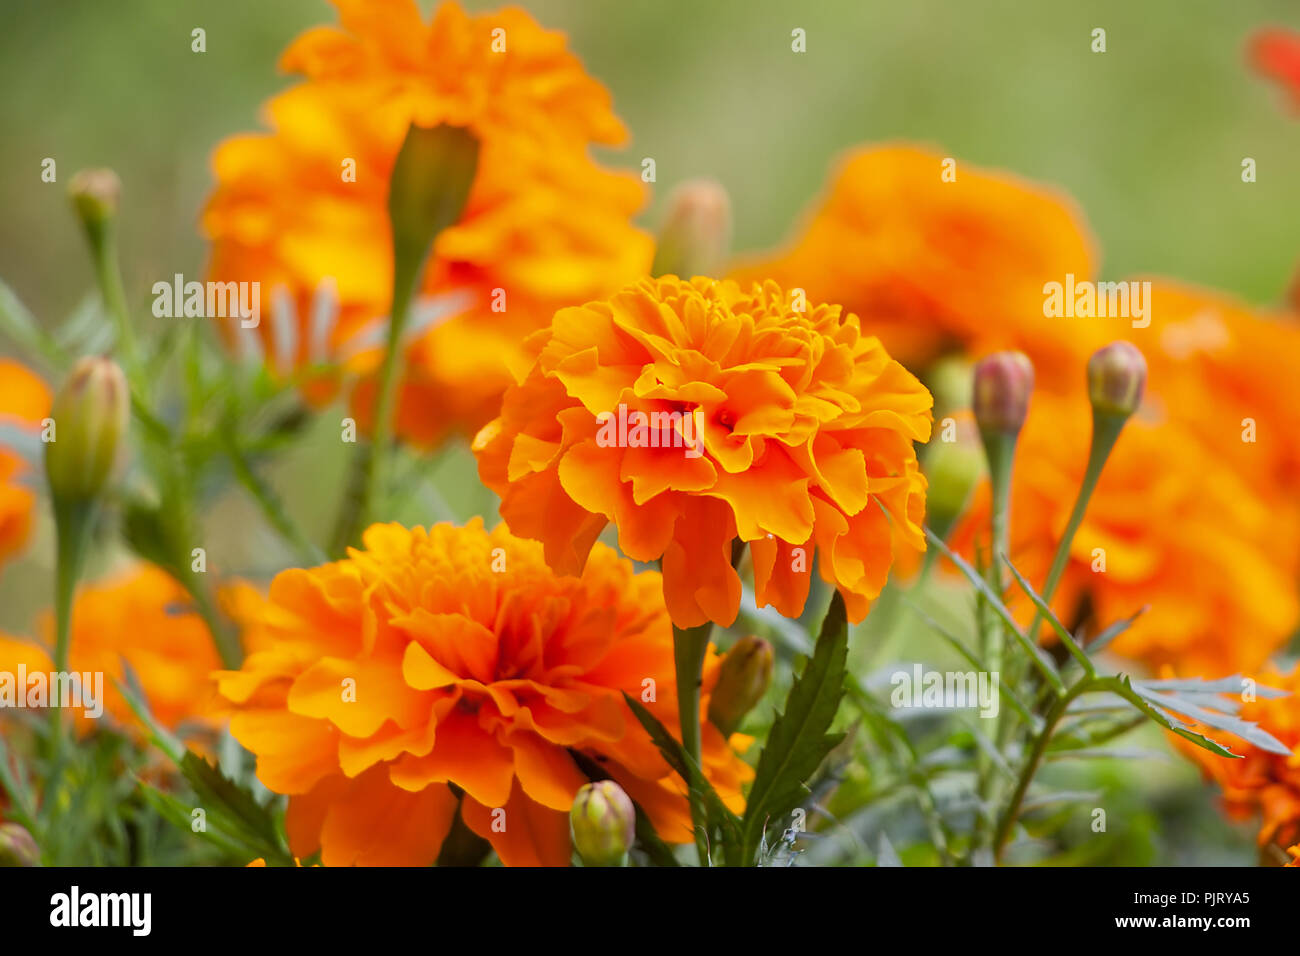 Domaine de l'orange-rouge fleurs de souci. Image en arrière-plan Banque D'Images